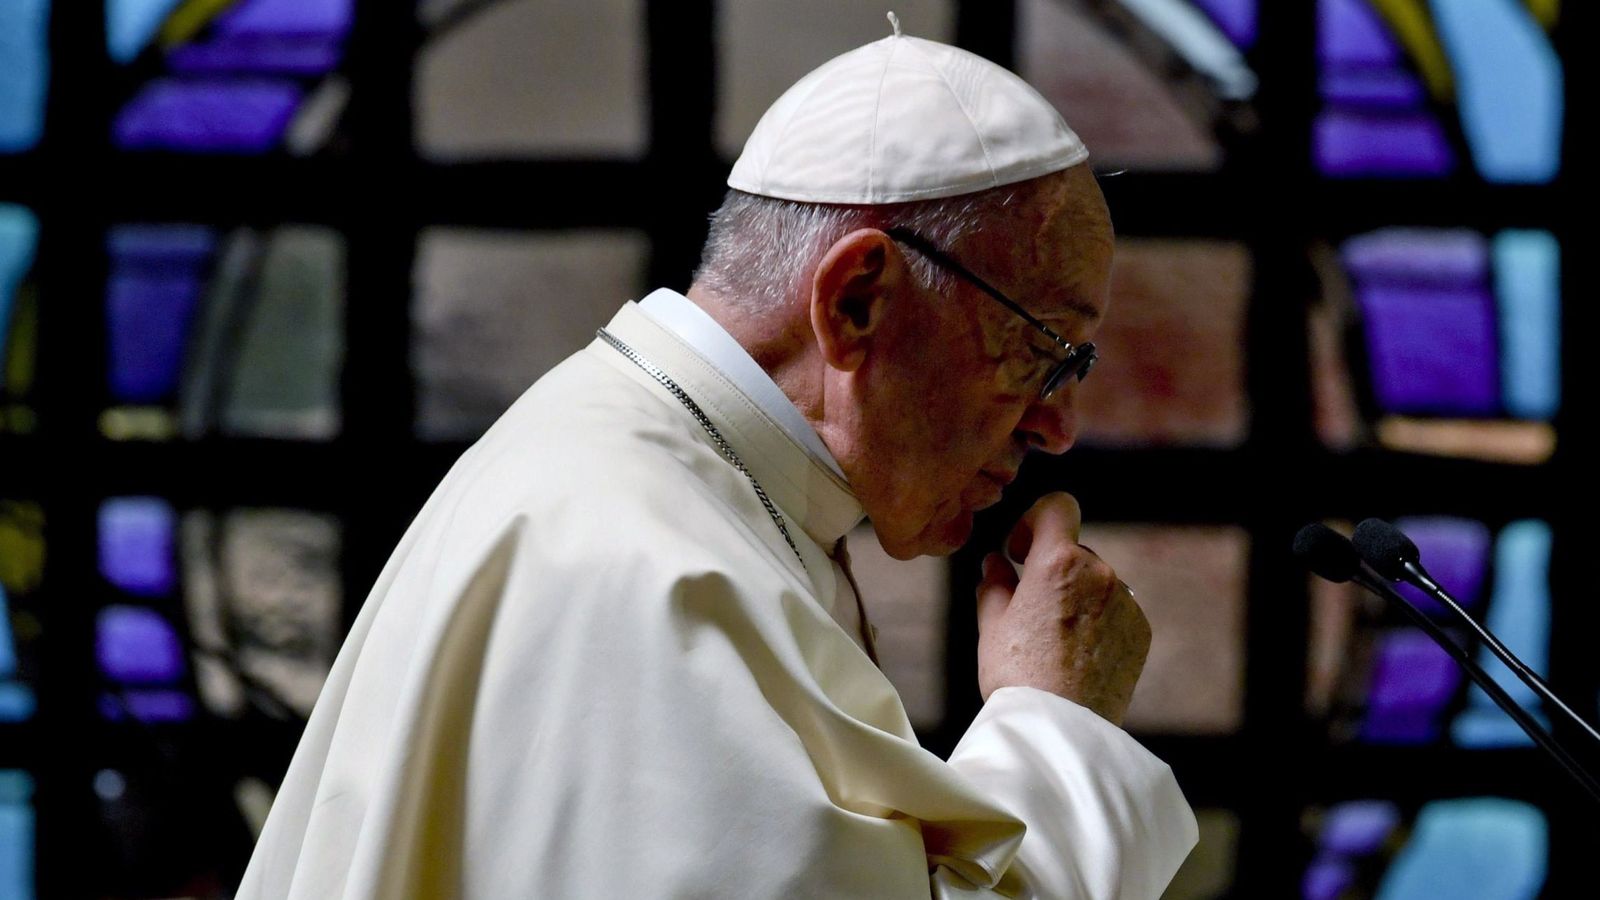 Foto: El Papa Francisco ha pedido perdón públicamente por los abusos sexuales en la Iglesia (EFE/Ciro Fusco)